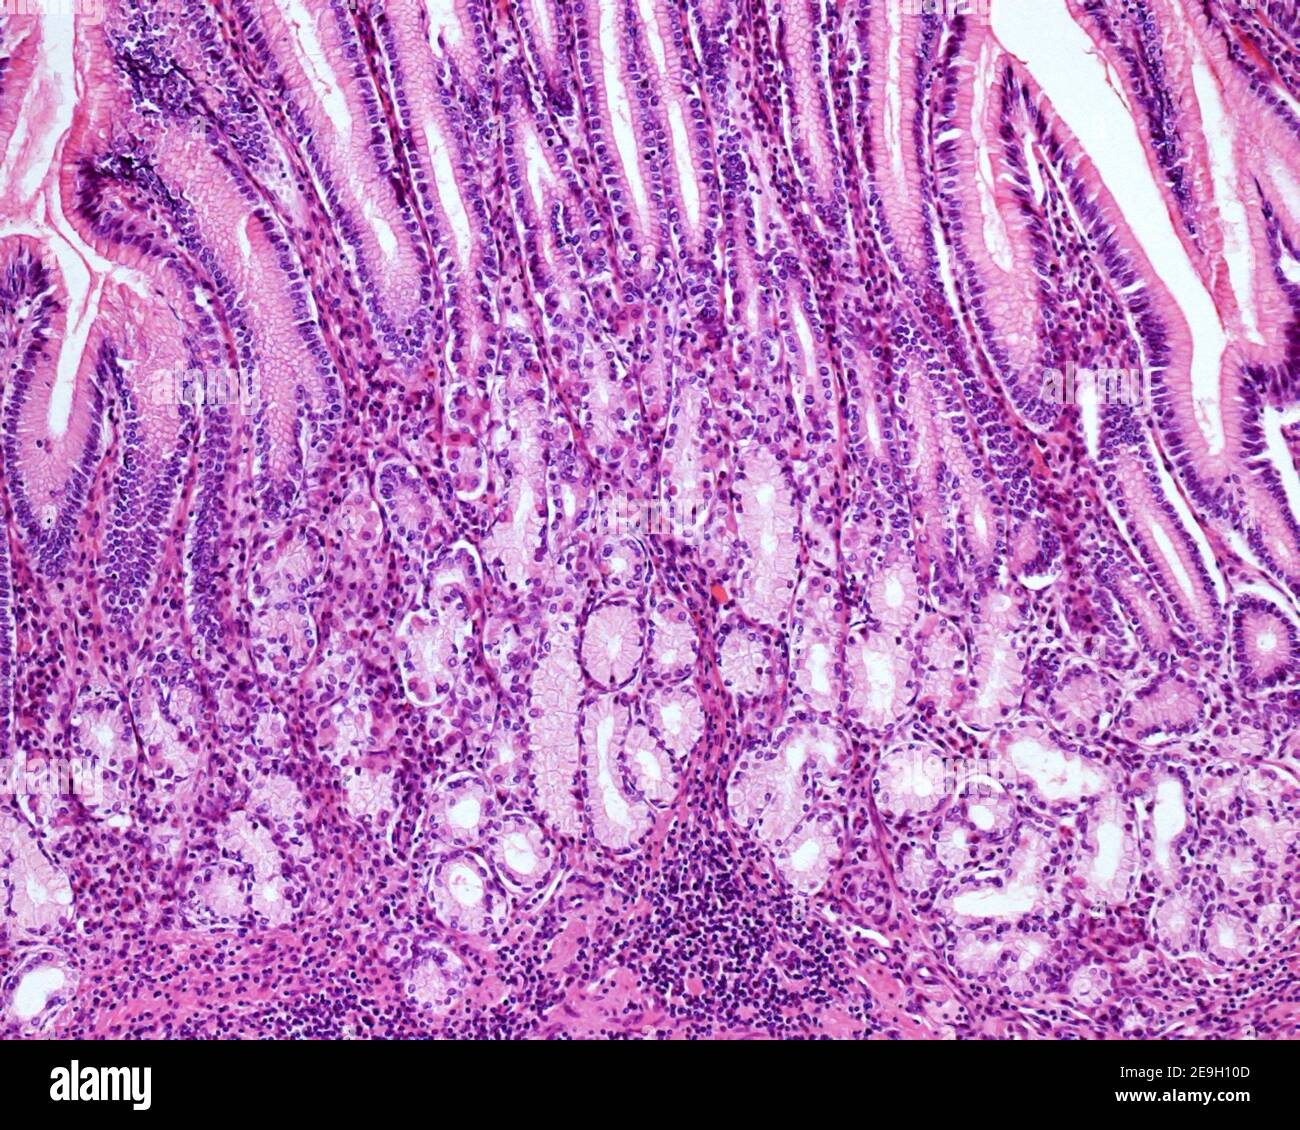 Zone profonde de la muqueuse gastrique pylorique. Il y a des fosses gastriques très profondes et des glandes pyloriques courtes formées par les cellules muqueuses claires et les cellules pariétales Banque D'Images